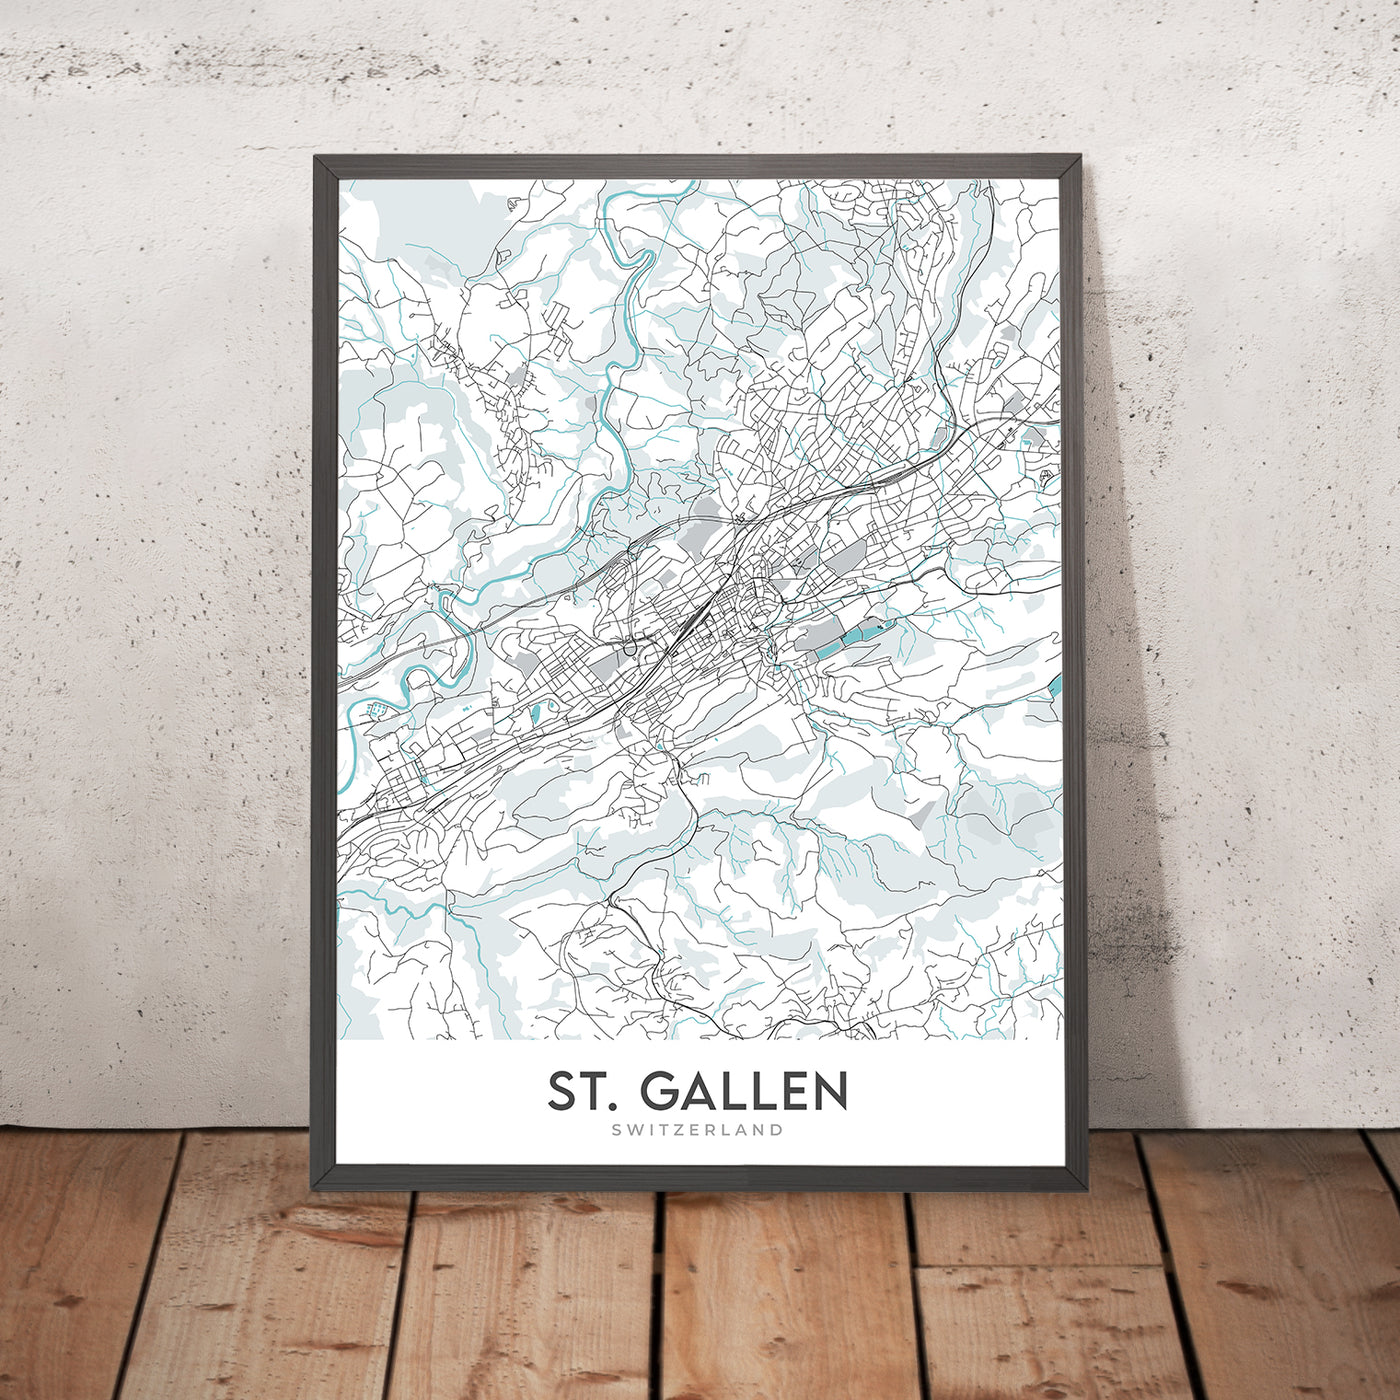 Mapa moderno de la ciudad de St. Gallen, Suiza: Abadía, Catedral, Universidad